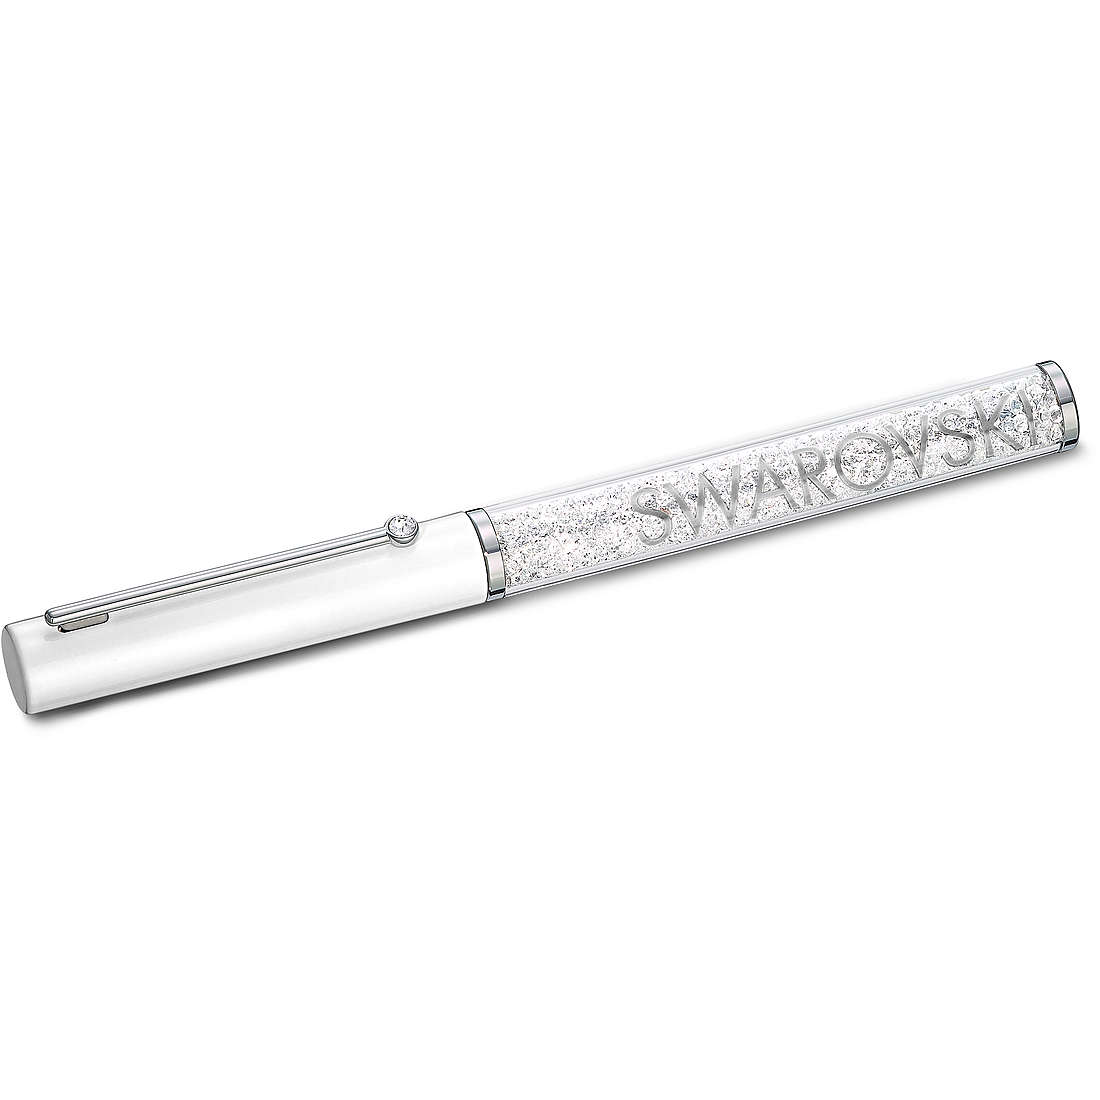 Stift Kugelschreiber Swarovski Crystalline da frau 5568761